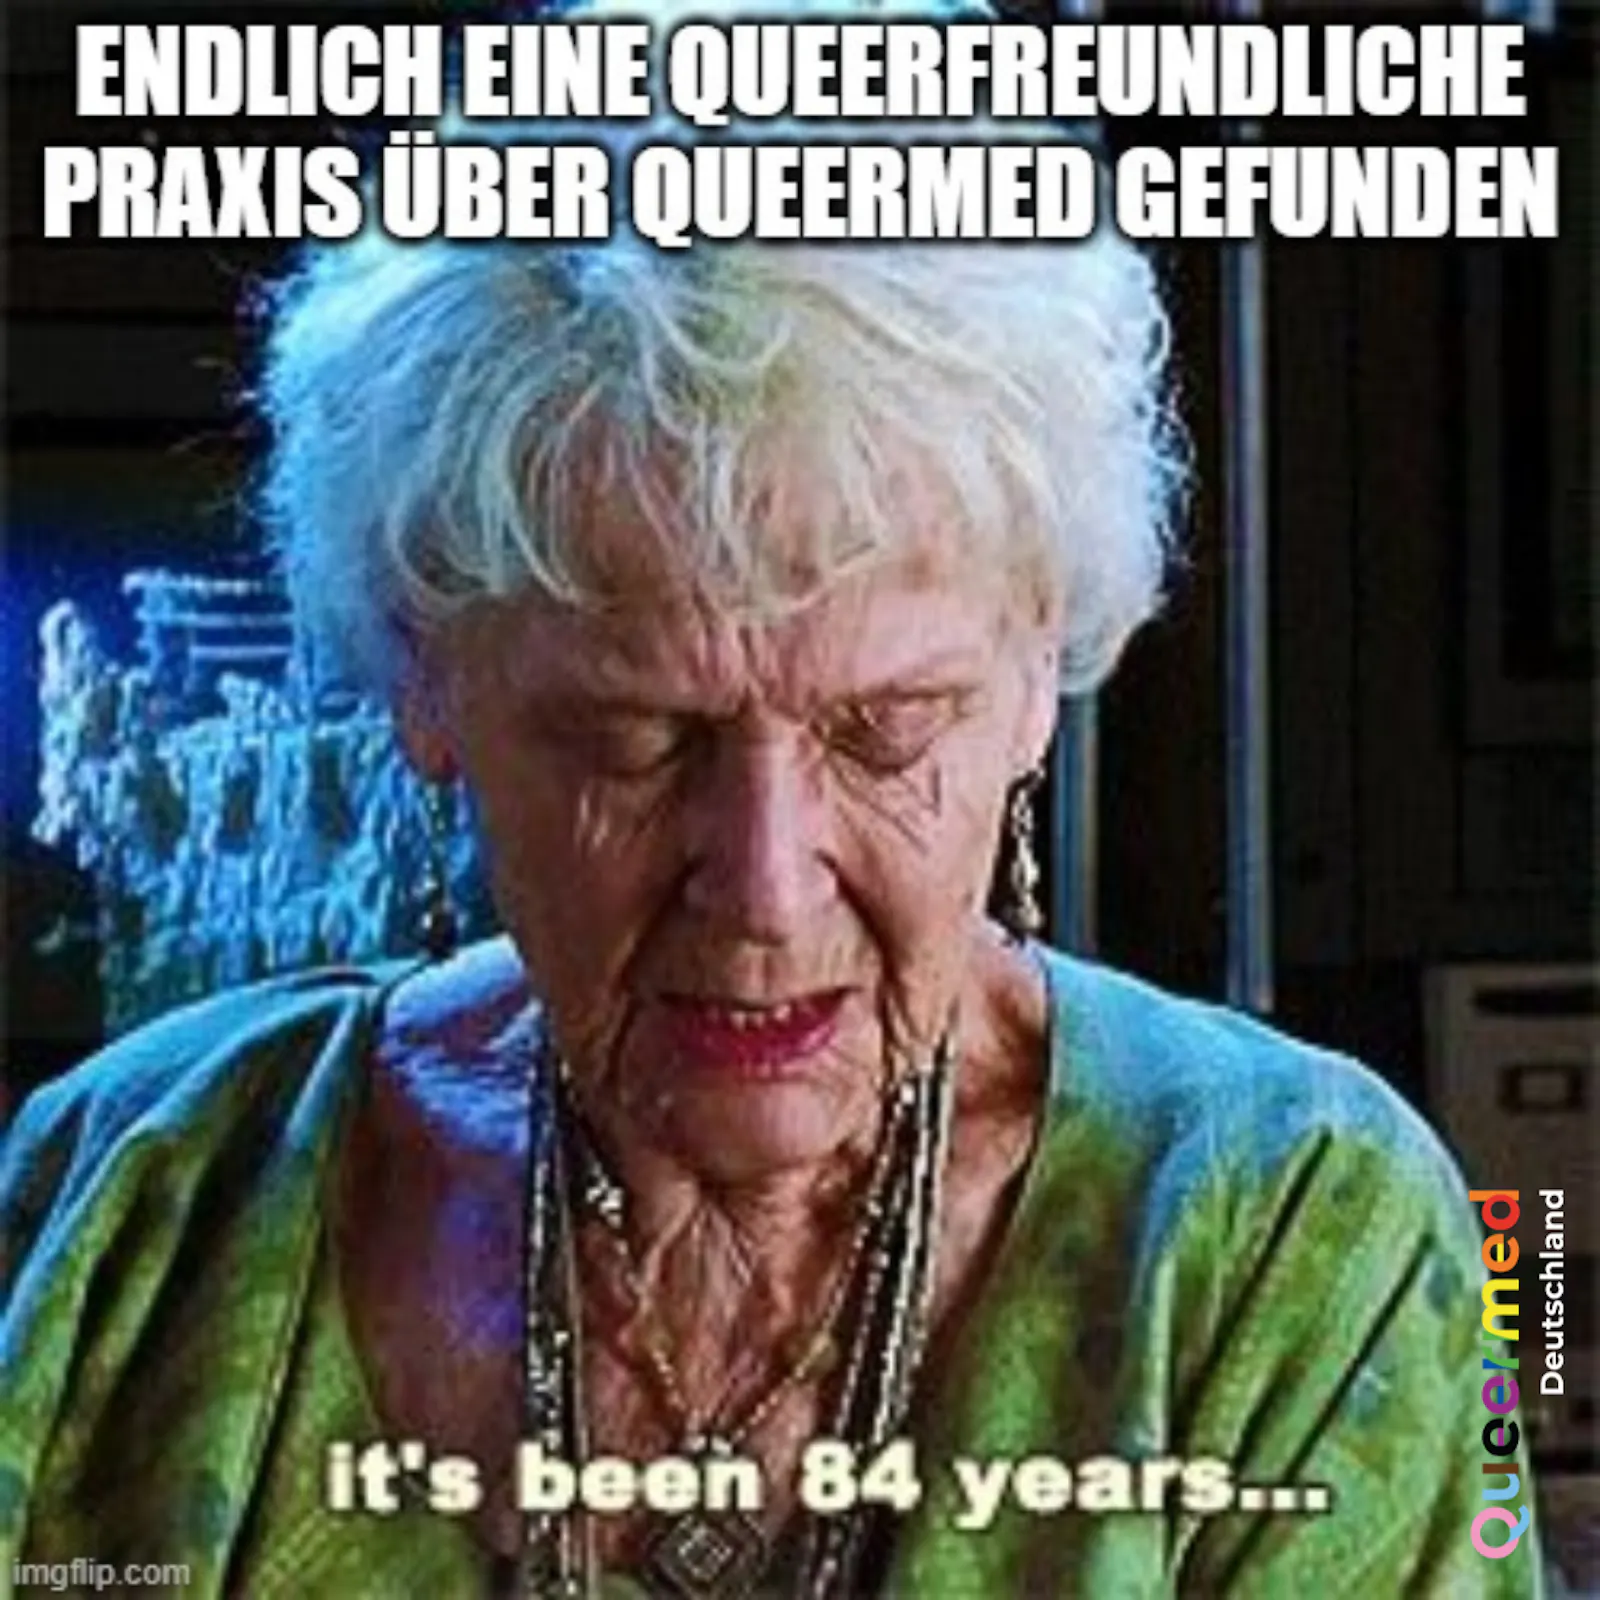 Titanic Meme: Endlich eine queerfreundliche Praxis über Queermed gefunden. It's been 84 years..."